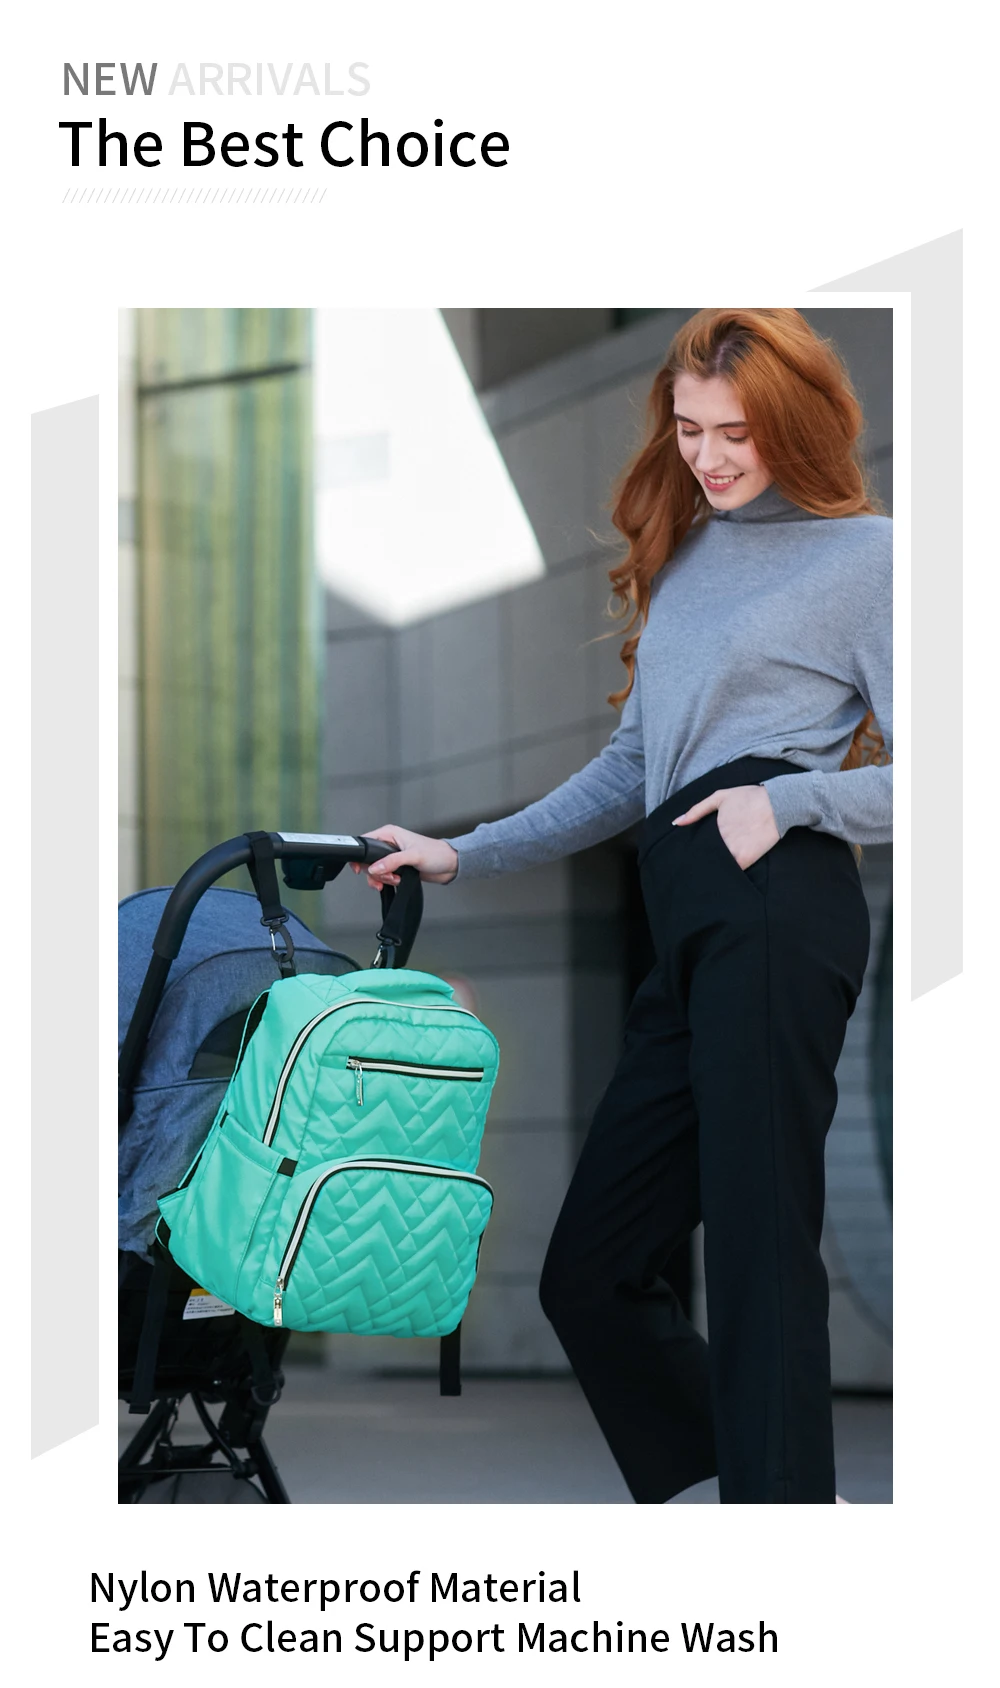 Островная Мода мумия для беременных пеленки мешок большой кормящих сумка рюкзак дизайнер мешок коляски ребенка Baby Care рюкзак для